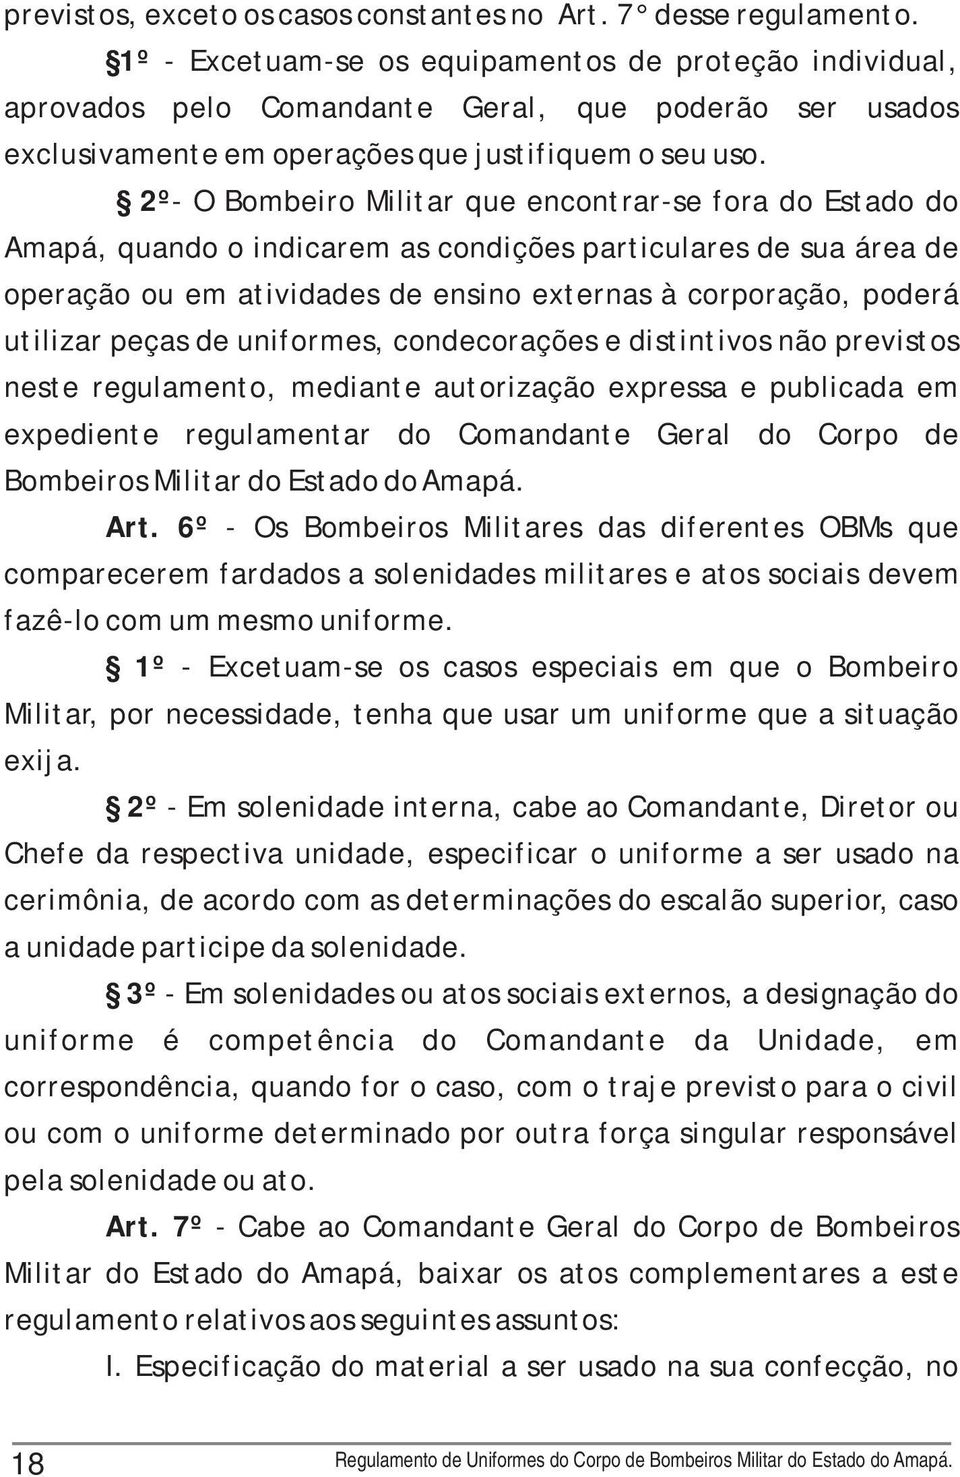 2º- O Bombeiro Militar que encontrar-se fora do Estado do Amapá, quando o indicarem as condições particulares de sua área de operação ou em atividades de ensino externas à corporação, poderá utilizar